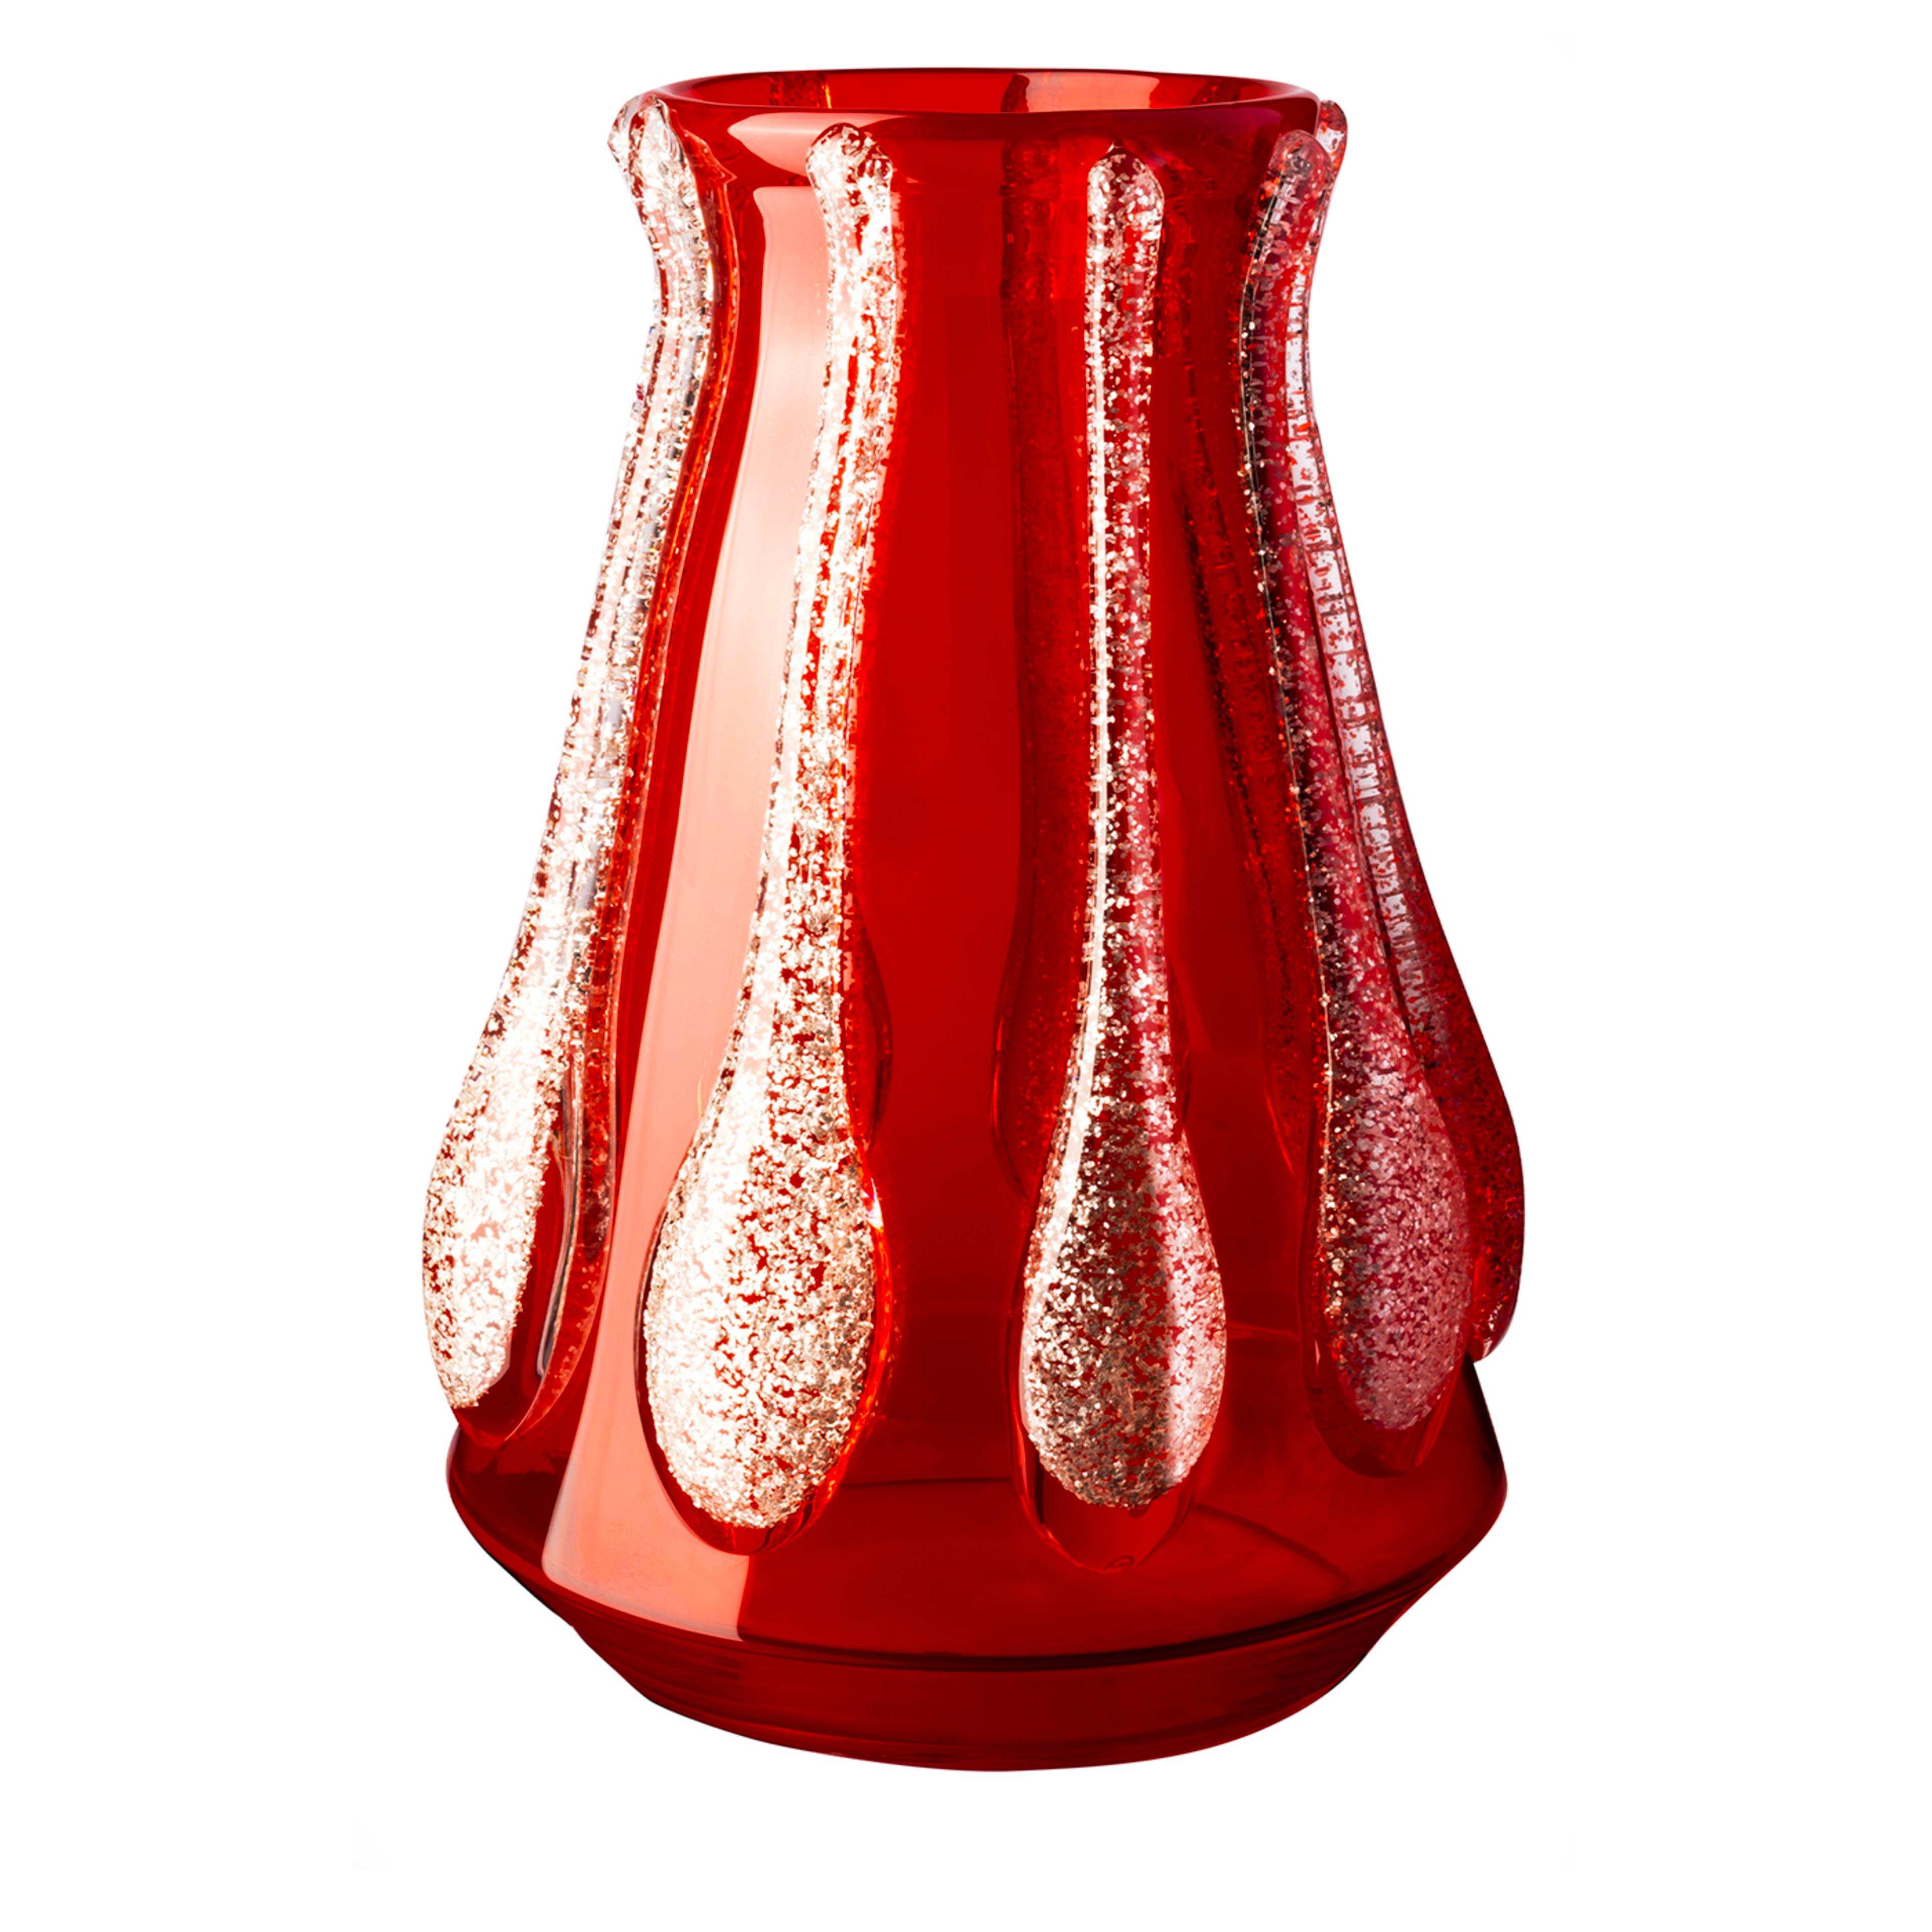 Diese mundgeblasene Vase aus wertvollem rotem Murano-Glas ist eine moderne Version der ikonischen Colate-Vase und steht für Glamour und Glasbläserkunst. Ein exzentrisches Statement setzen die silbernen Glitzersteine, die in den gussähnlichen